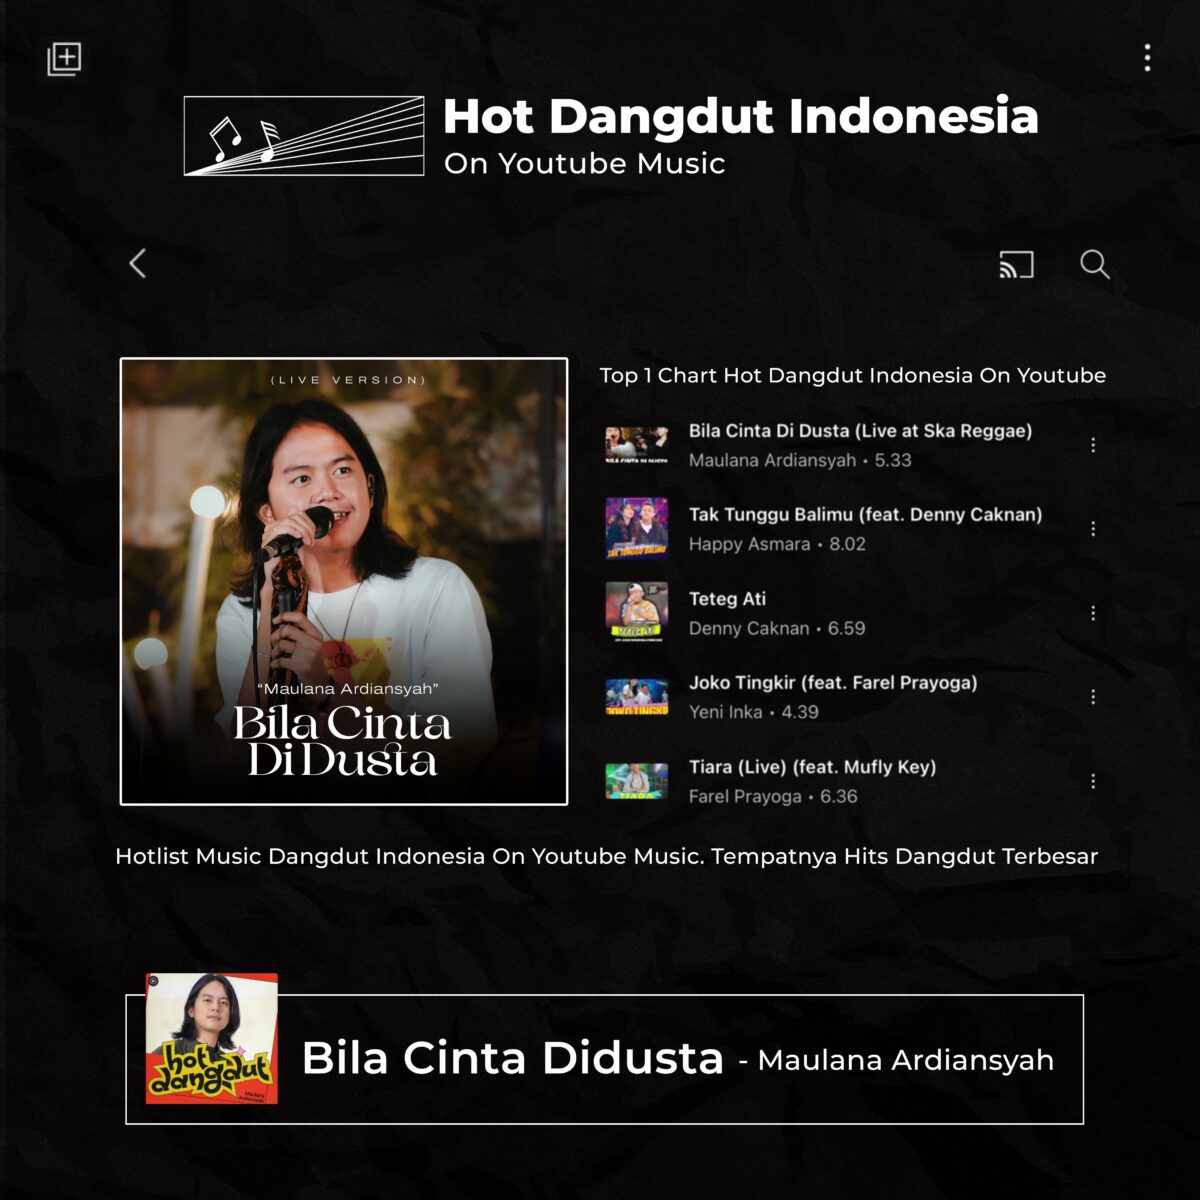 Tanpa Berdusta, Maulana Ardiansyah Kembali Menunjukkan Taringnya Dengan Menduduki Puncak Playlist Hot Dangdut